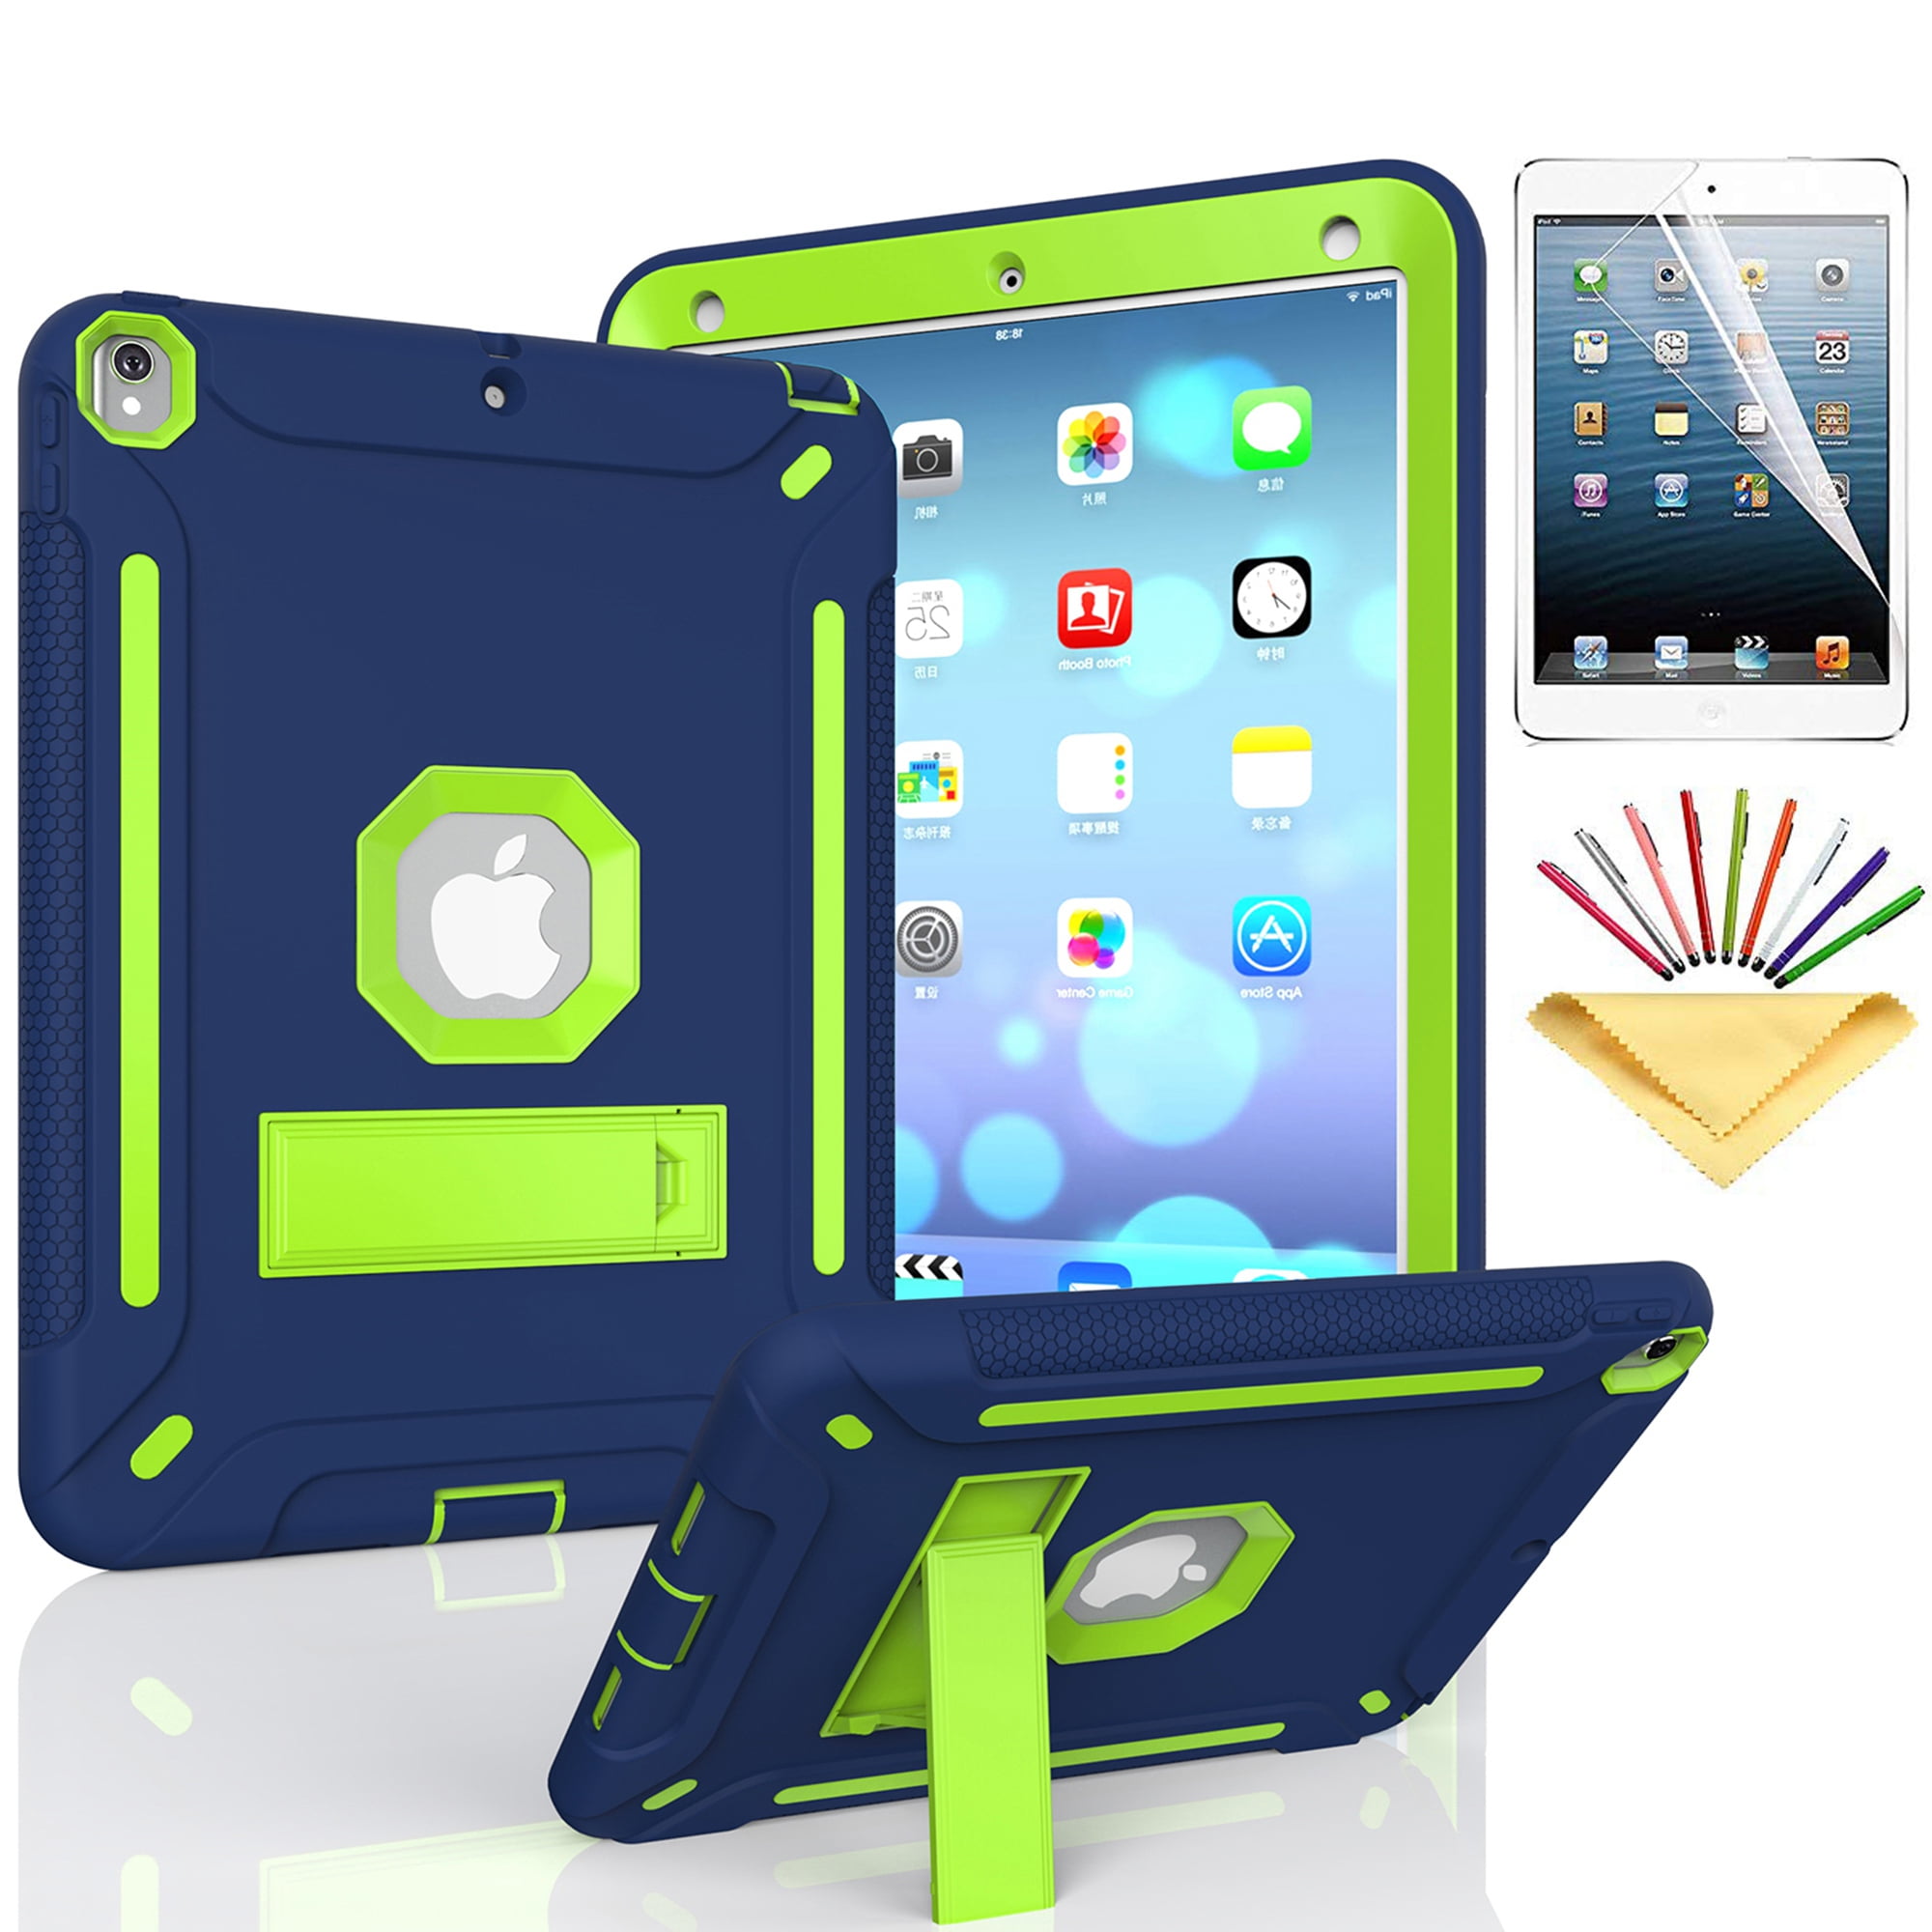  iPad Pro 10,5 atril, iPad Pro 10,5 híbrido caso, triple-layer  Protección Carcasa de silicona Shockproof Hard Shell Funda Con Función Atril  para iPad Pro 10,5 [Not Fit iPad Pro 9.7], Negro